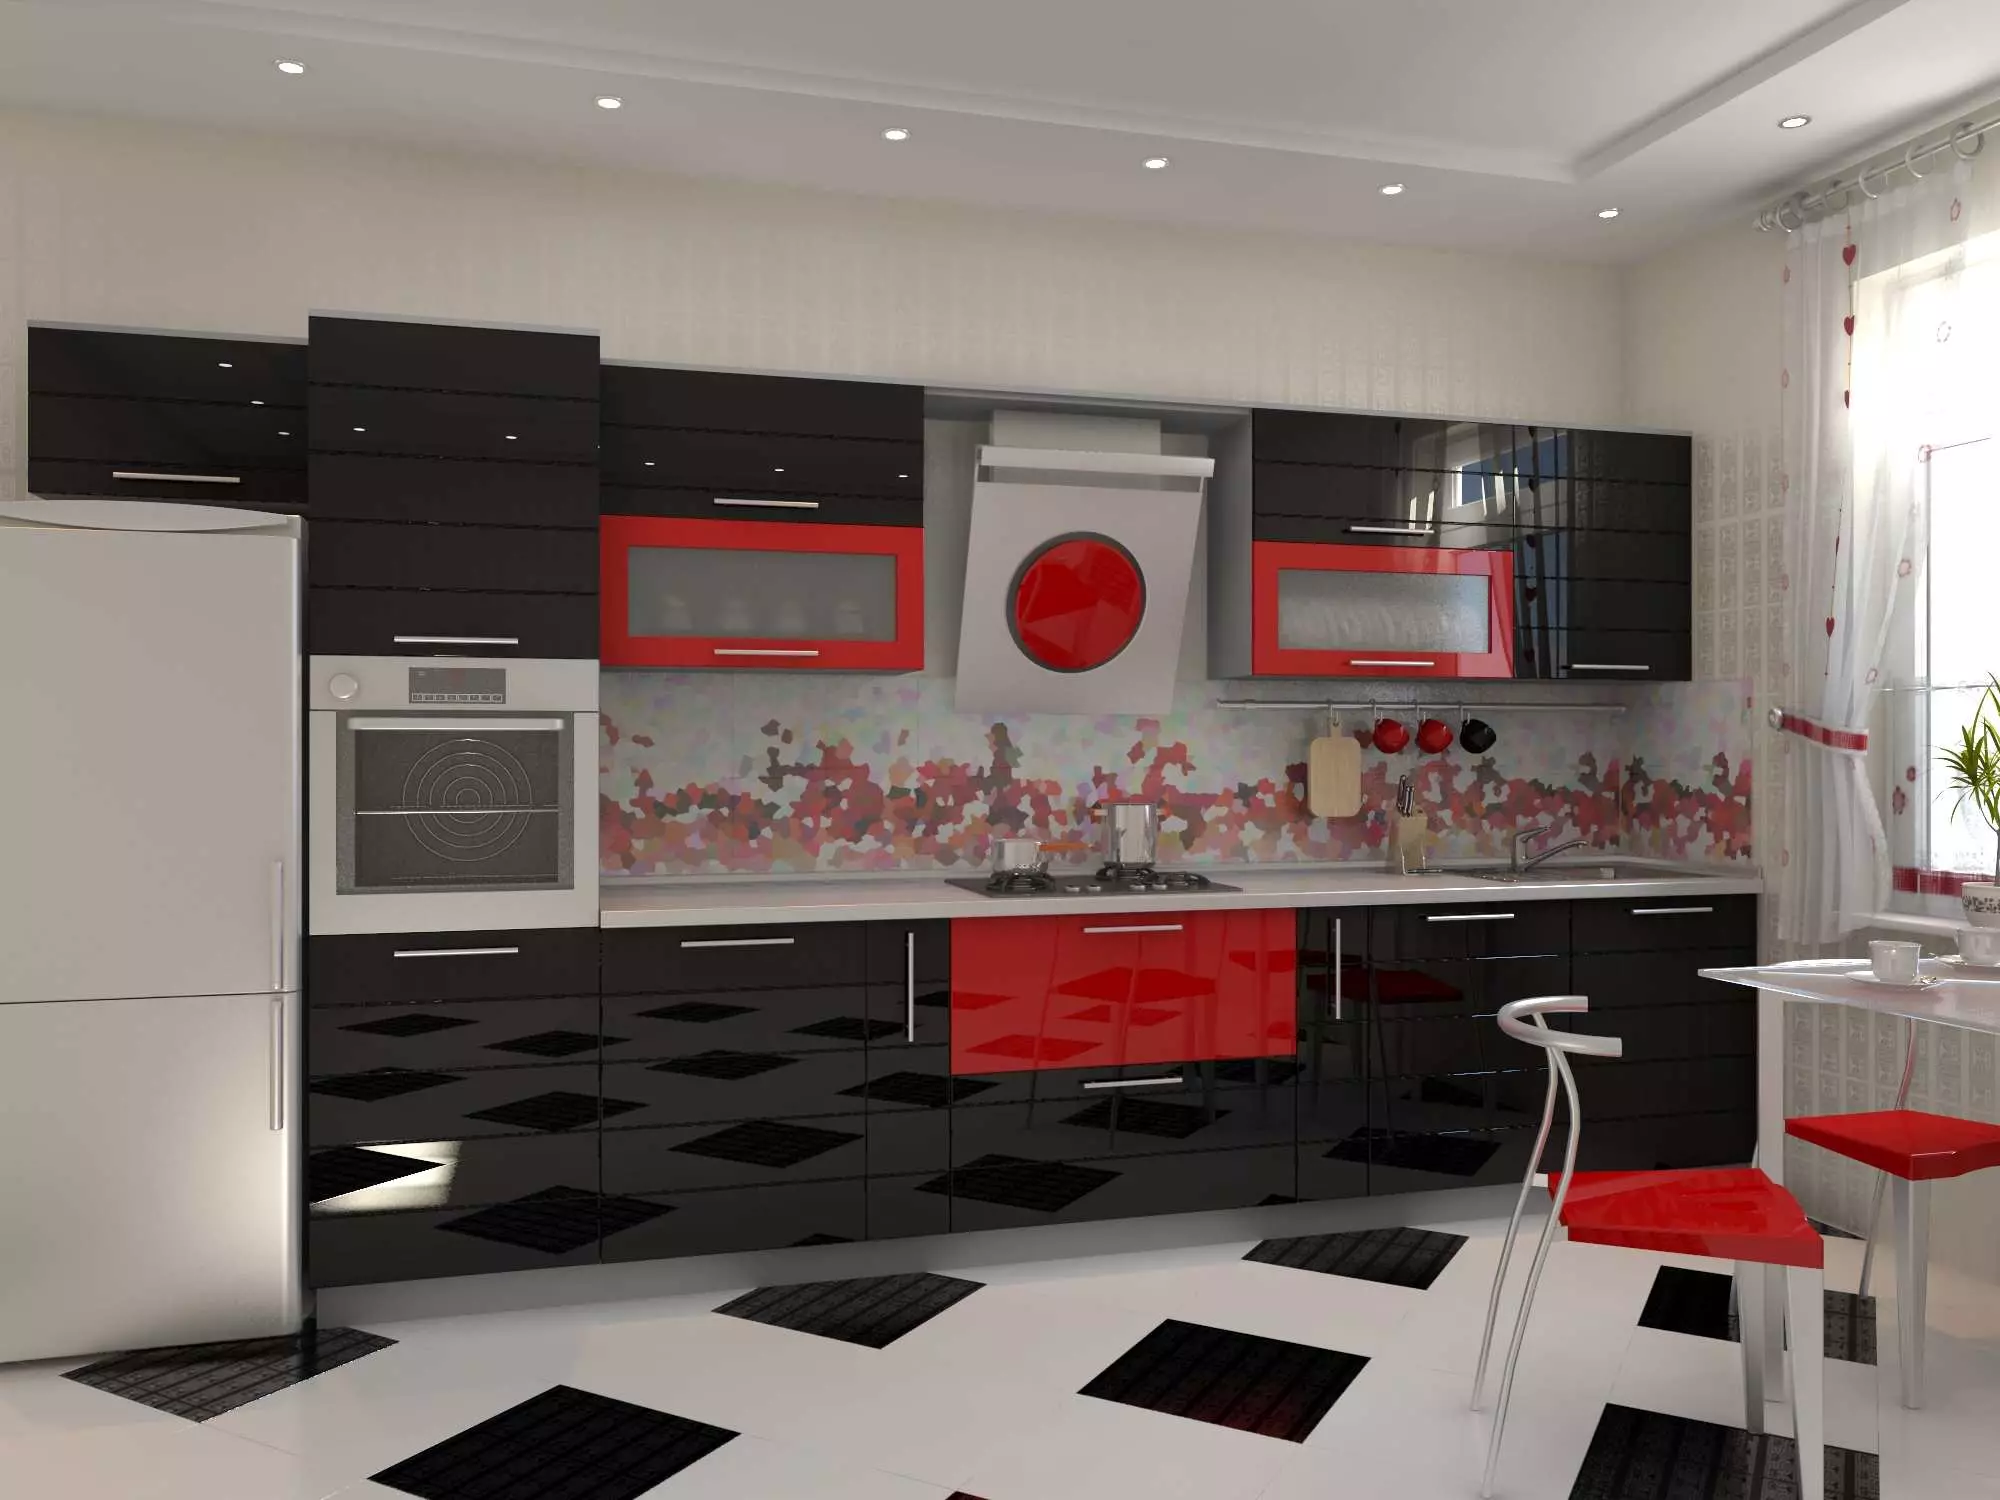 Nhà bếp màu đỏ và đen (77 ảnh): Góc và nhà bếp thẳng Giáng sinh và nhà bếp trắng thiết kế trong thiết kế nội thất, bếp bóng màu đỏ và đáy đen 21144_45